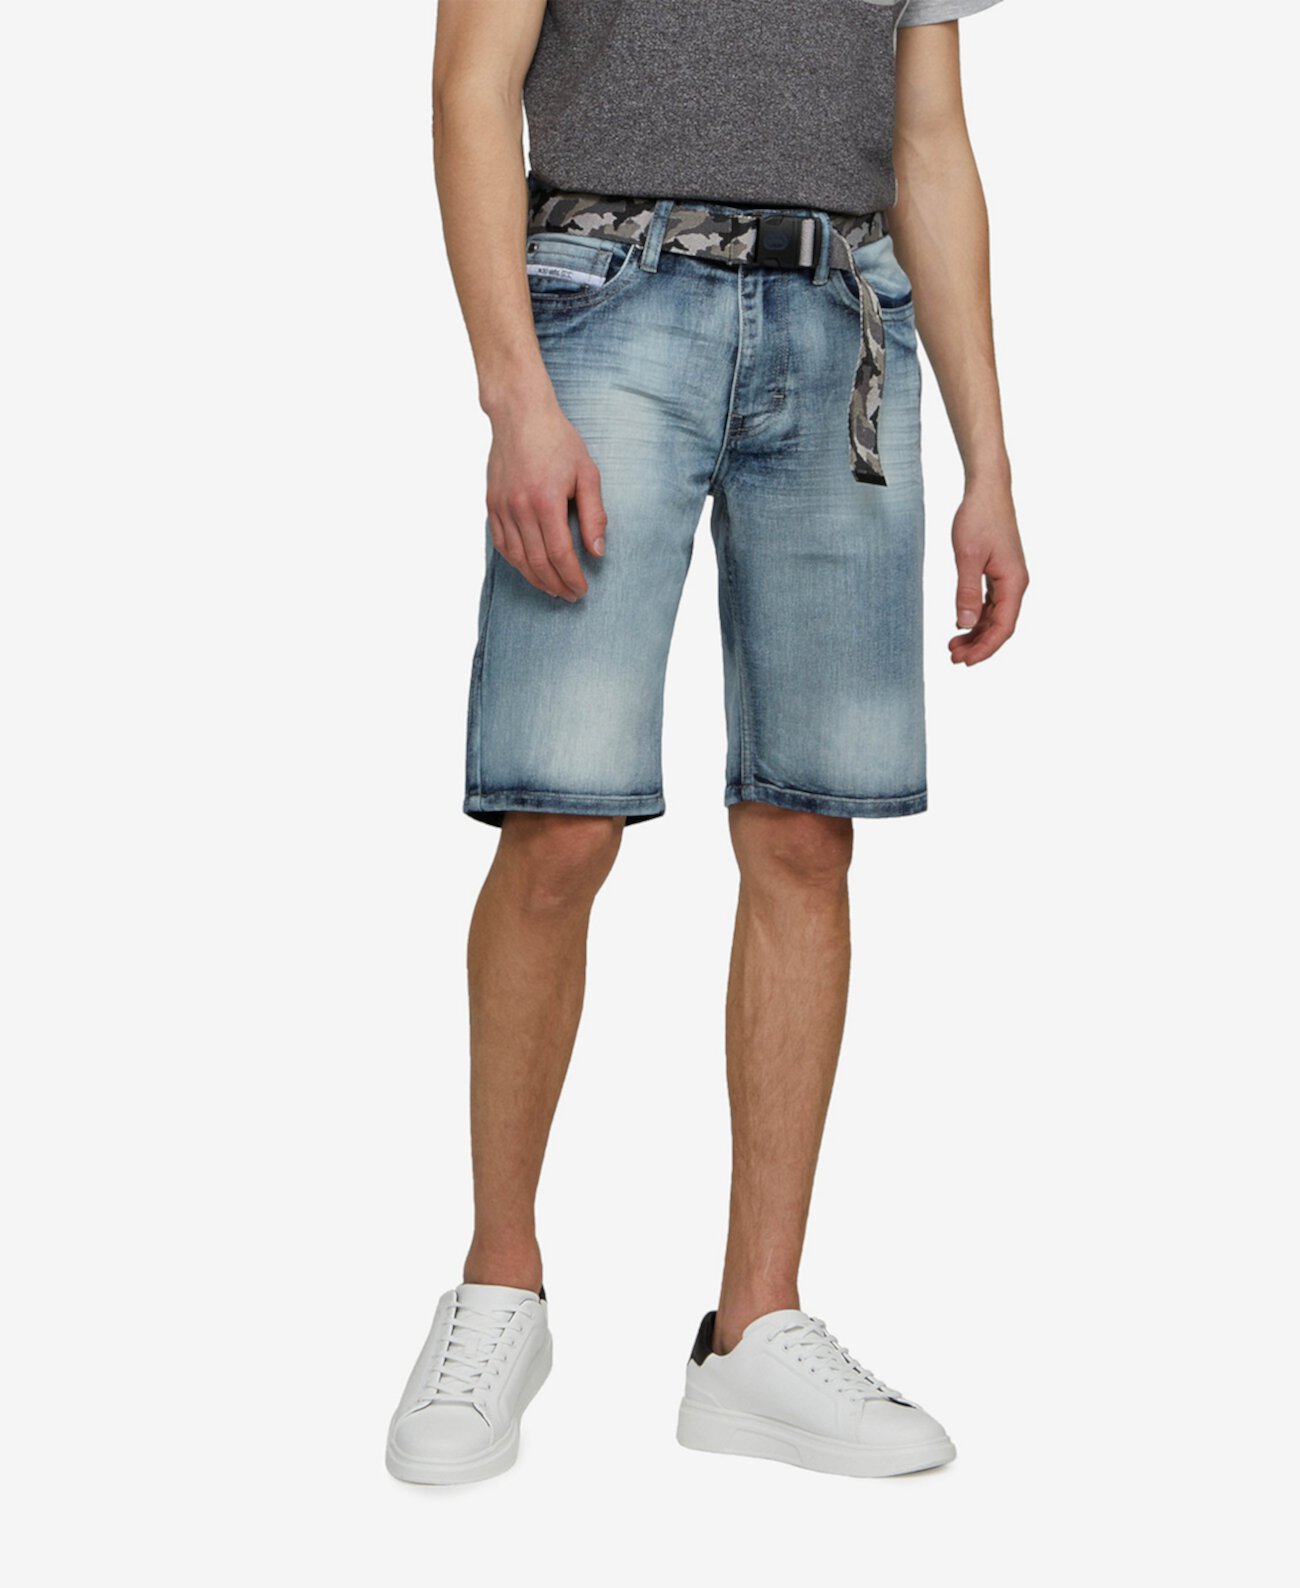 Мужские джинсовые шорты Big and Tall Feeling Fresh с регулируемым поясом, комплект из 2 предметов Ecko Unltd